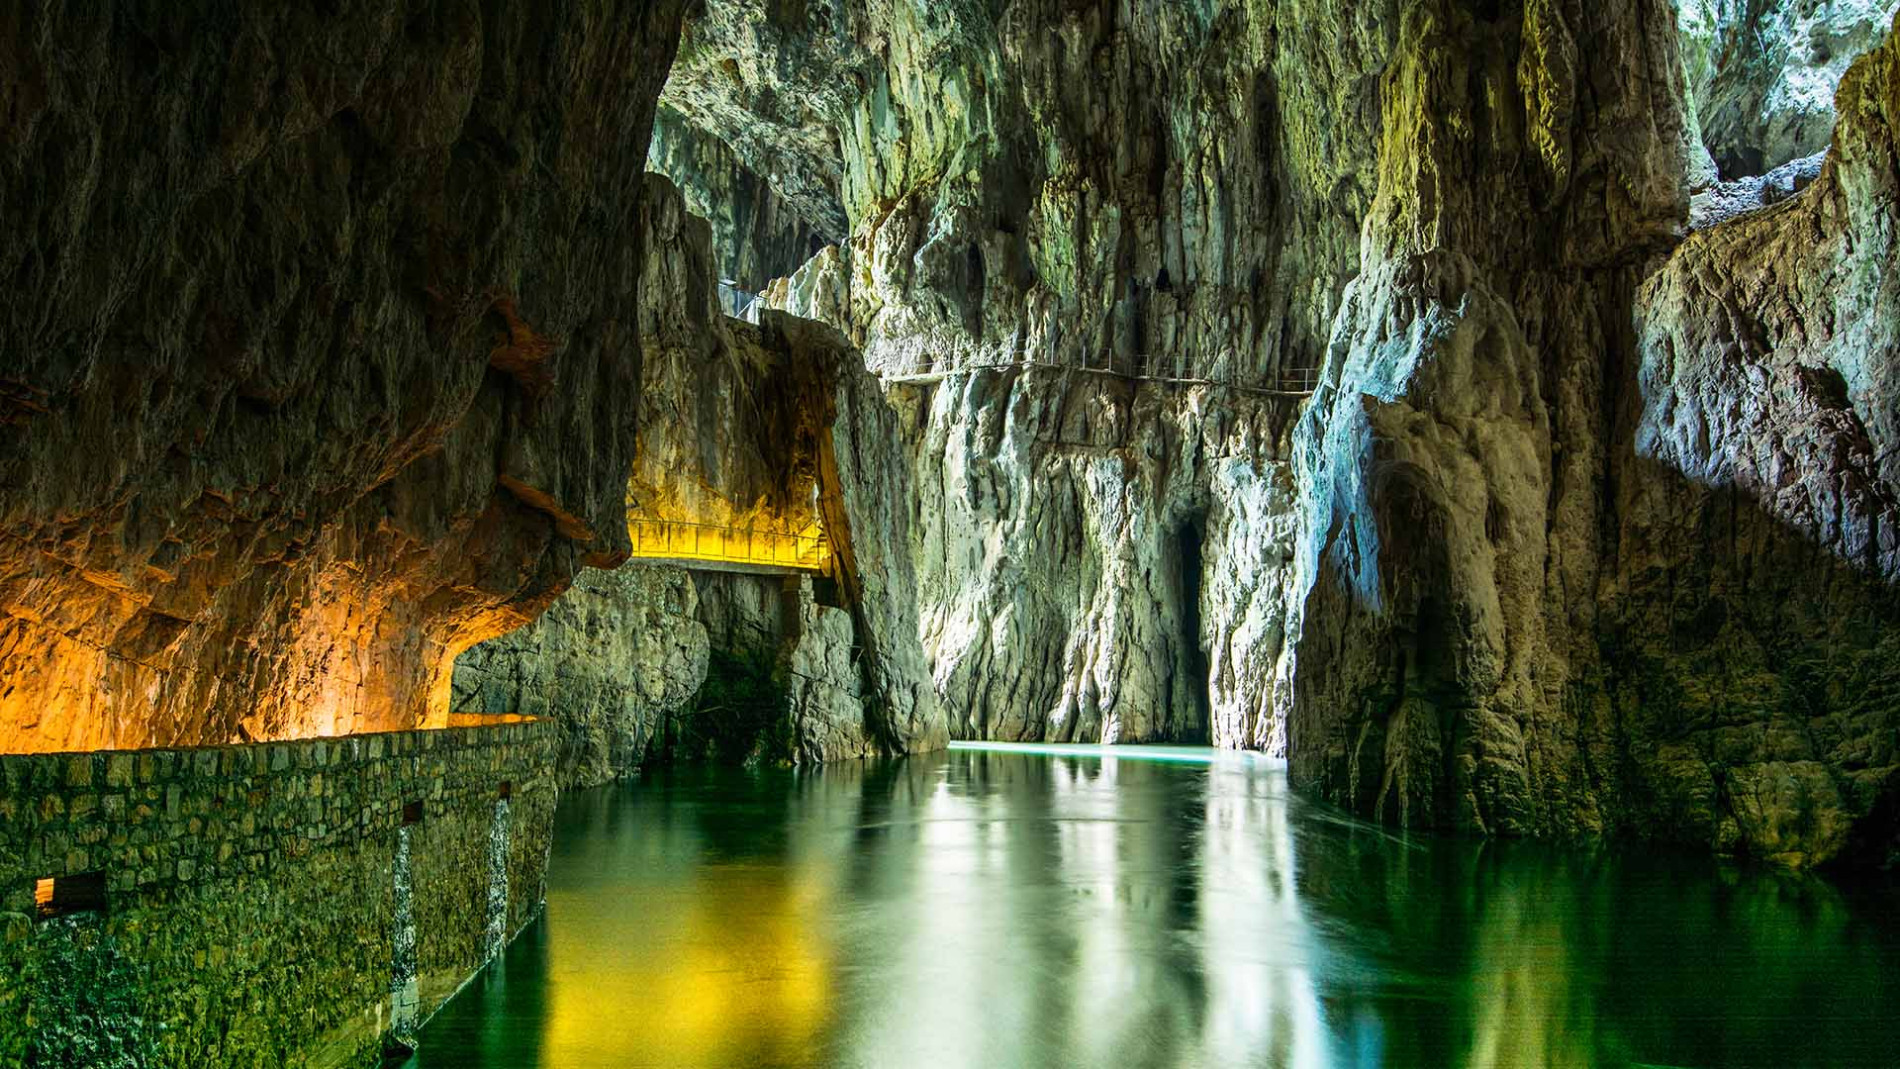 skocjan caves river shutterstock